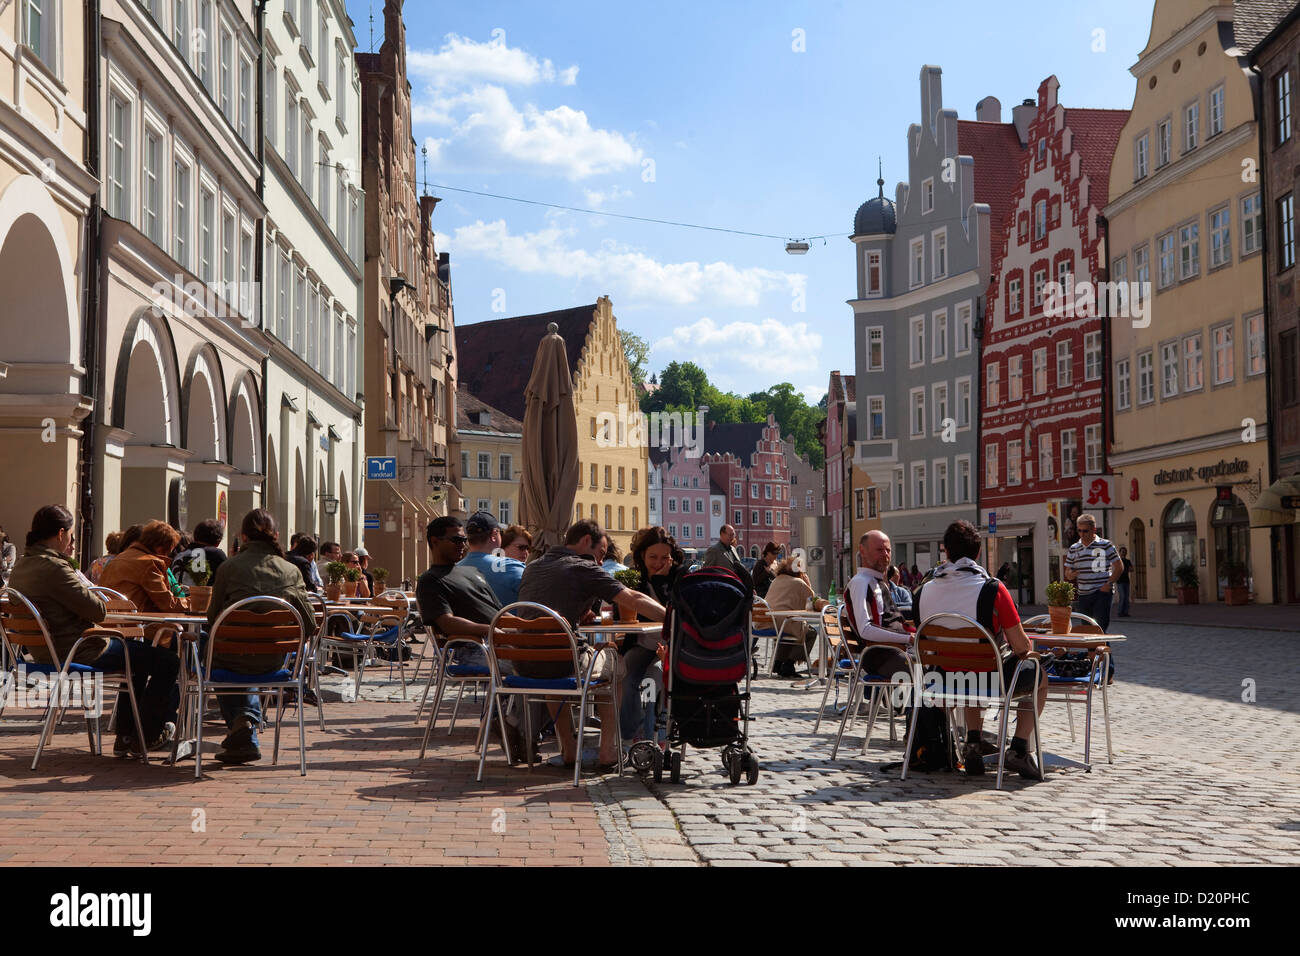 Straßencafé und historischen Häusern entlang Altstadtgasse, Landshut, untere Bayern, Bayern, Deutschland, Europa Stockfoto